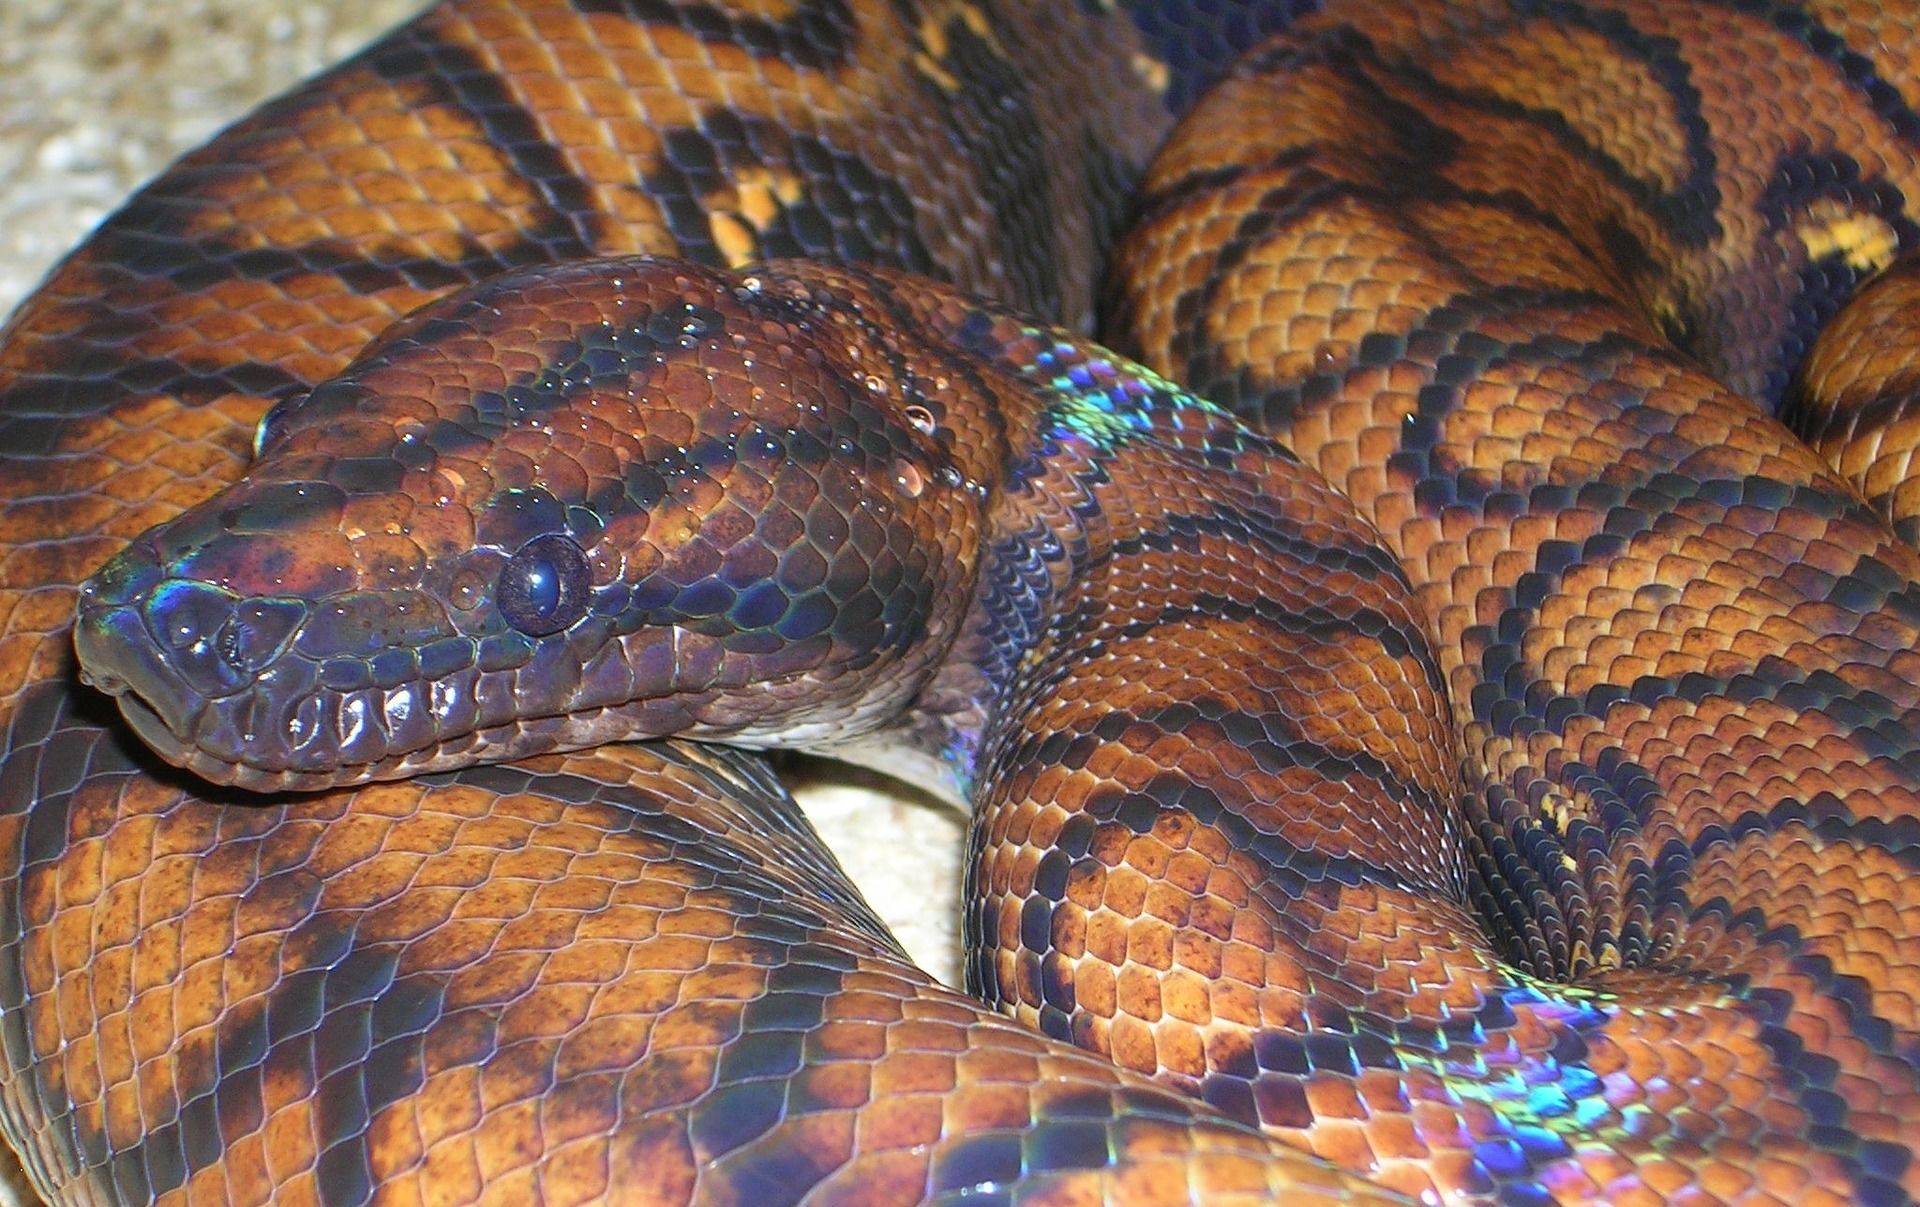 Cobra arco-íris: nova espécie de cobra é descoberta no Vietnã